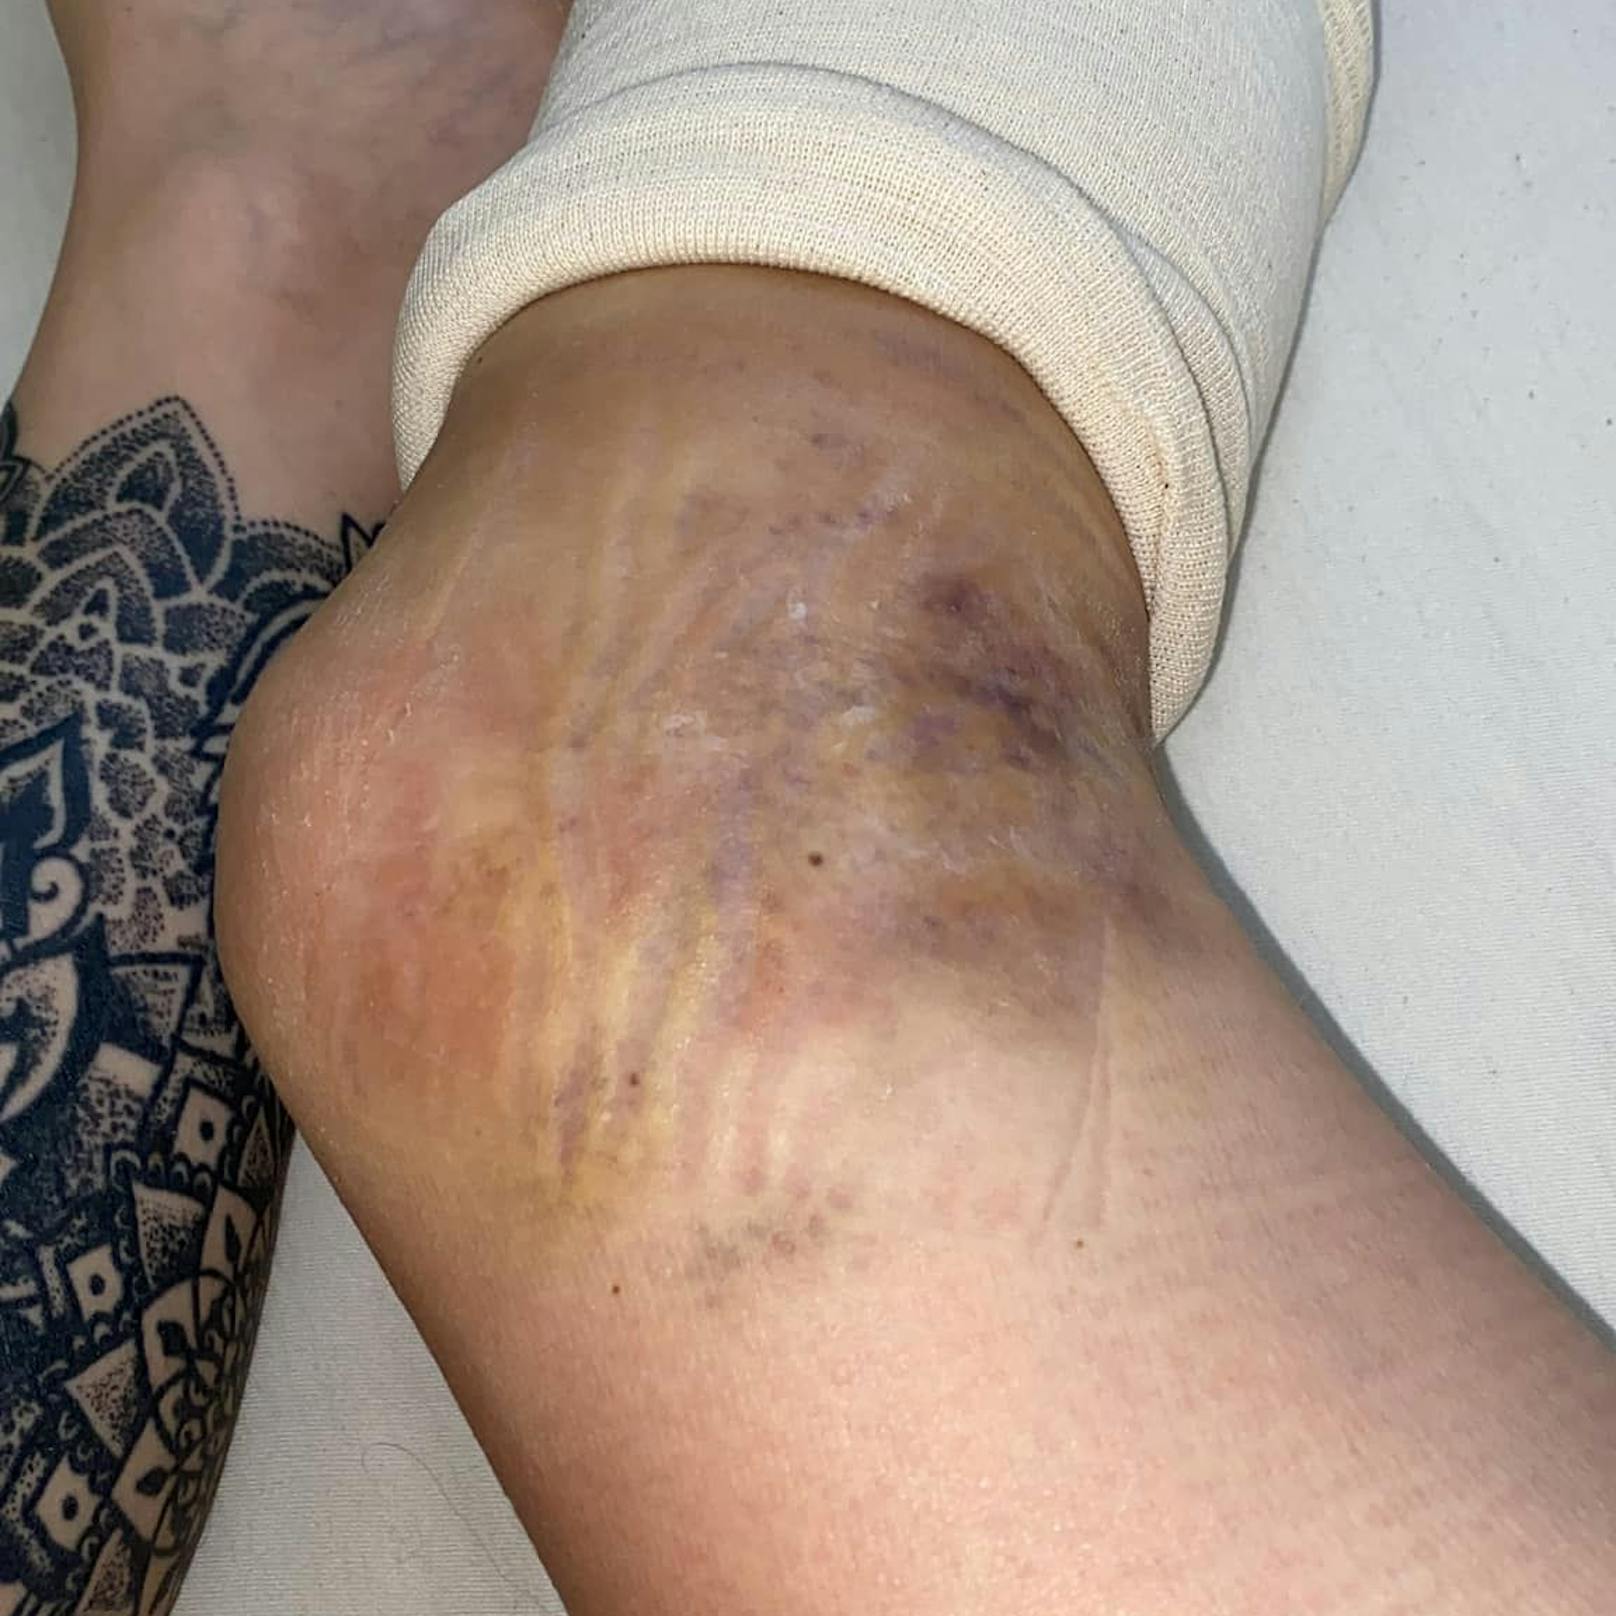 Michelle St. zeigt ihre schwere Verletzung am Bein.